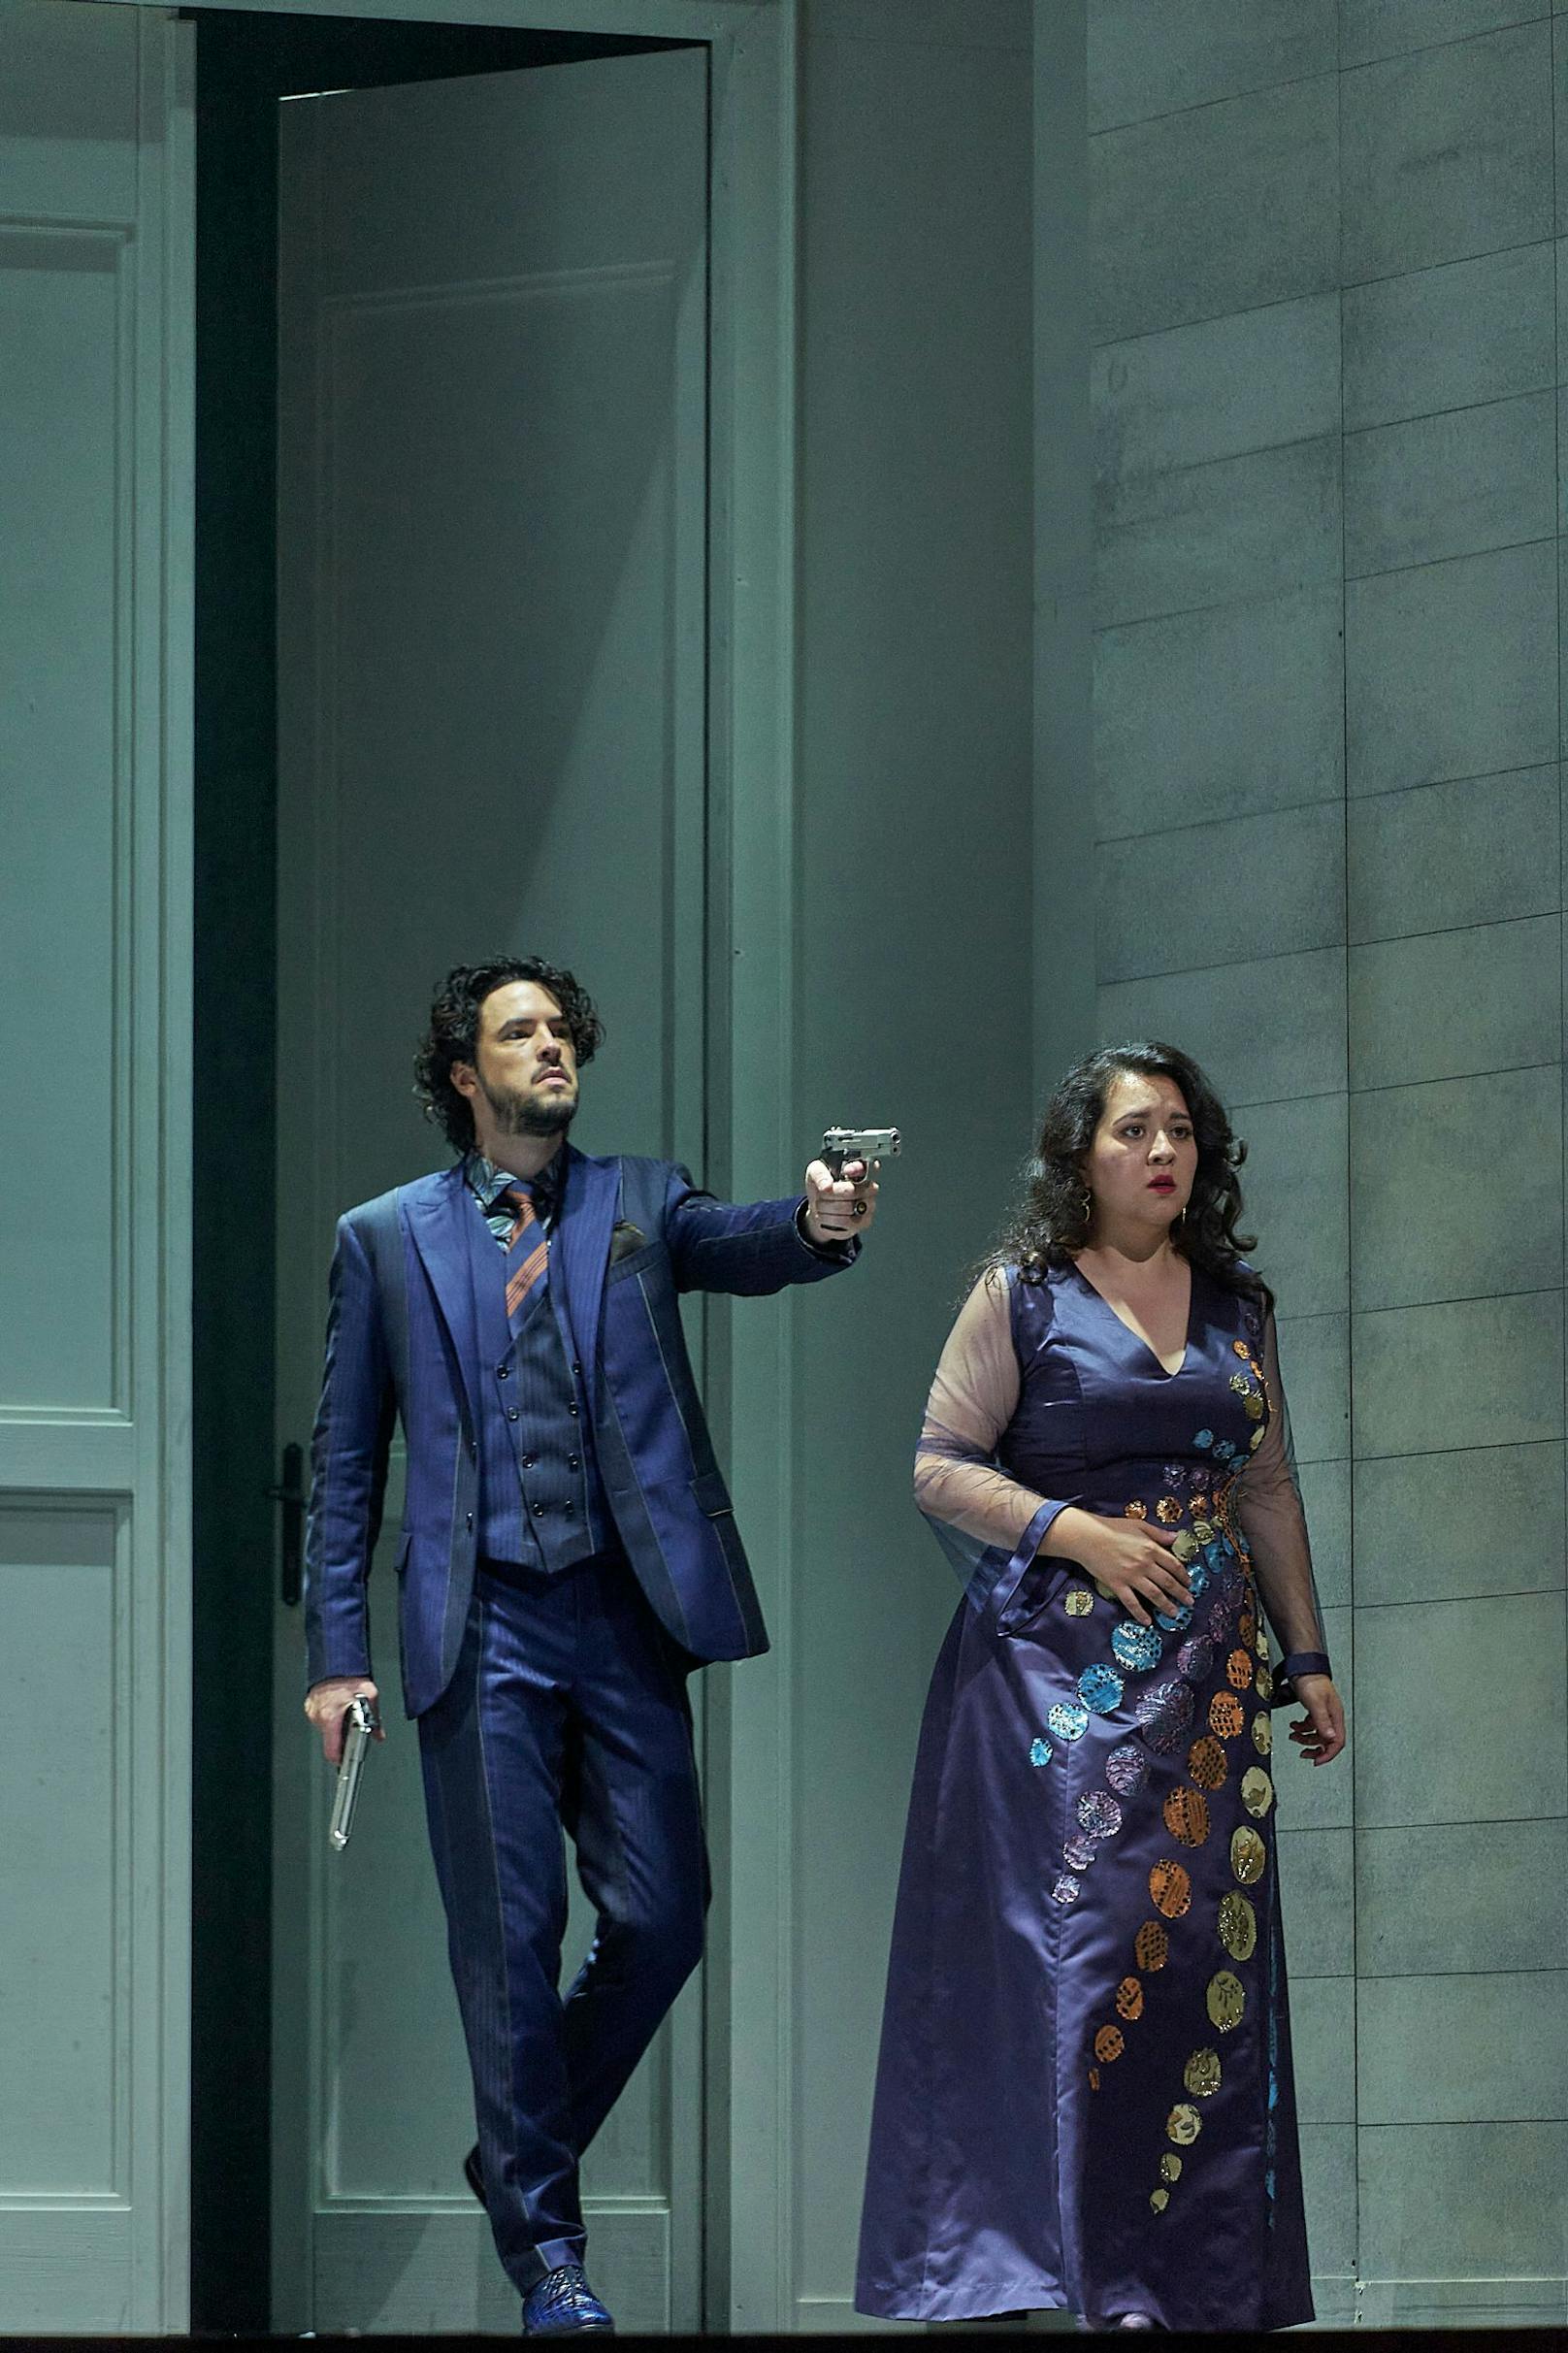 Le nozze die Figaro: Eine Hochzeit und viele Todesfälle